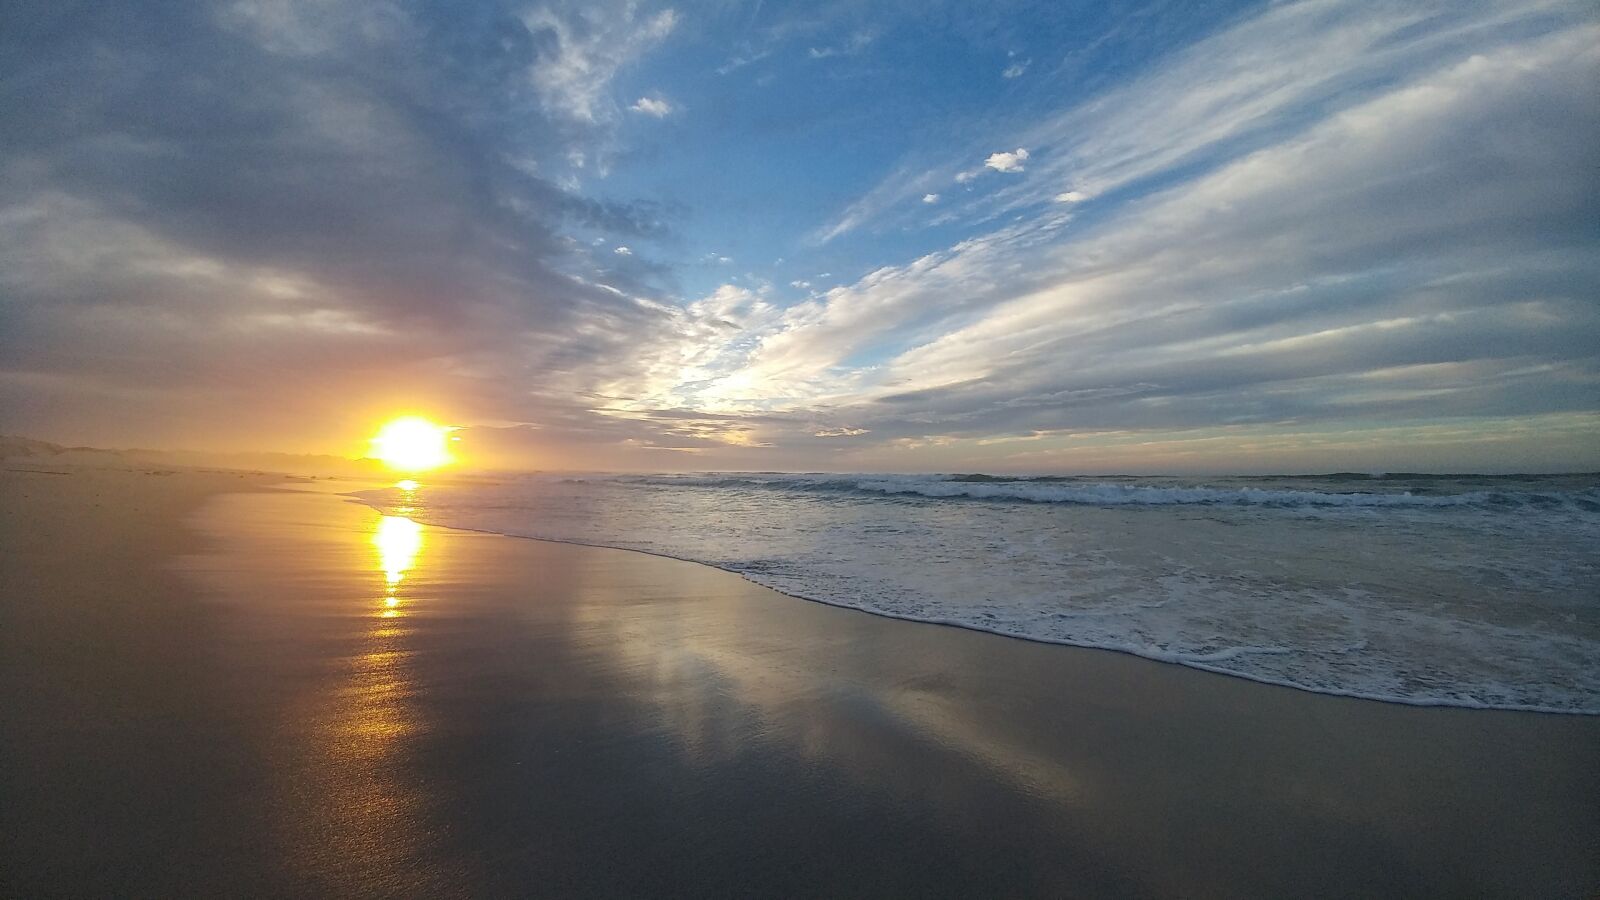 LG G5 SE sample photo. Sunrise, sunset, nature photography